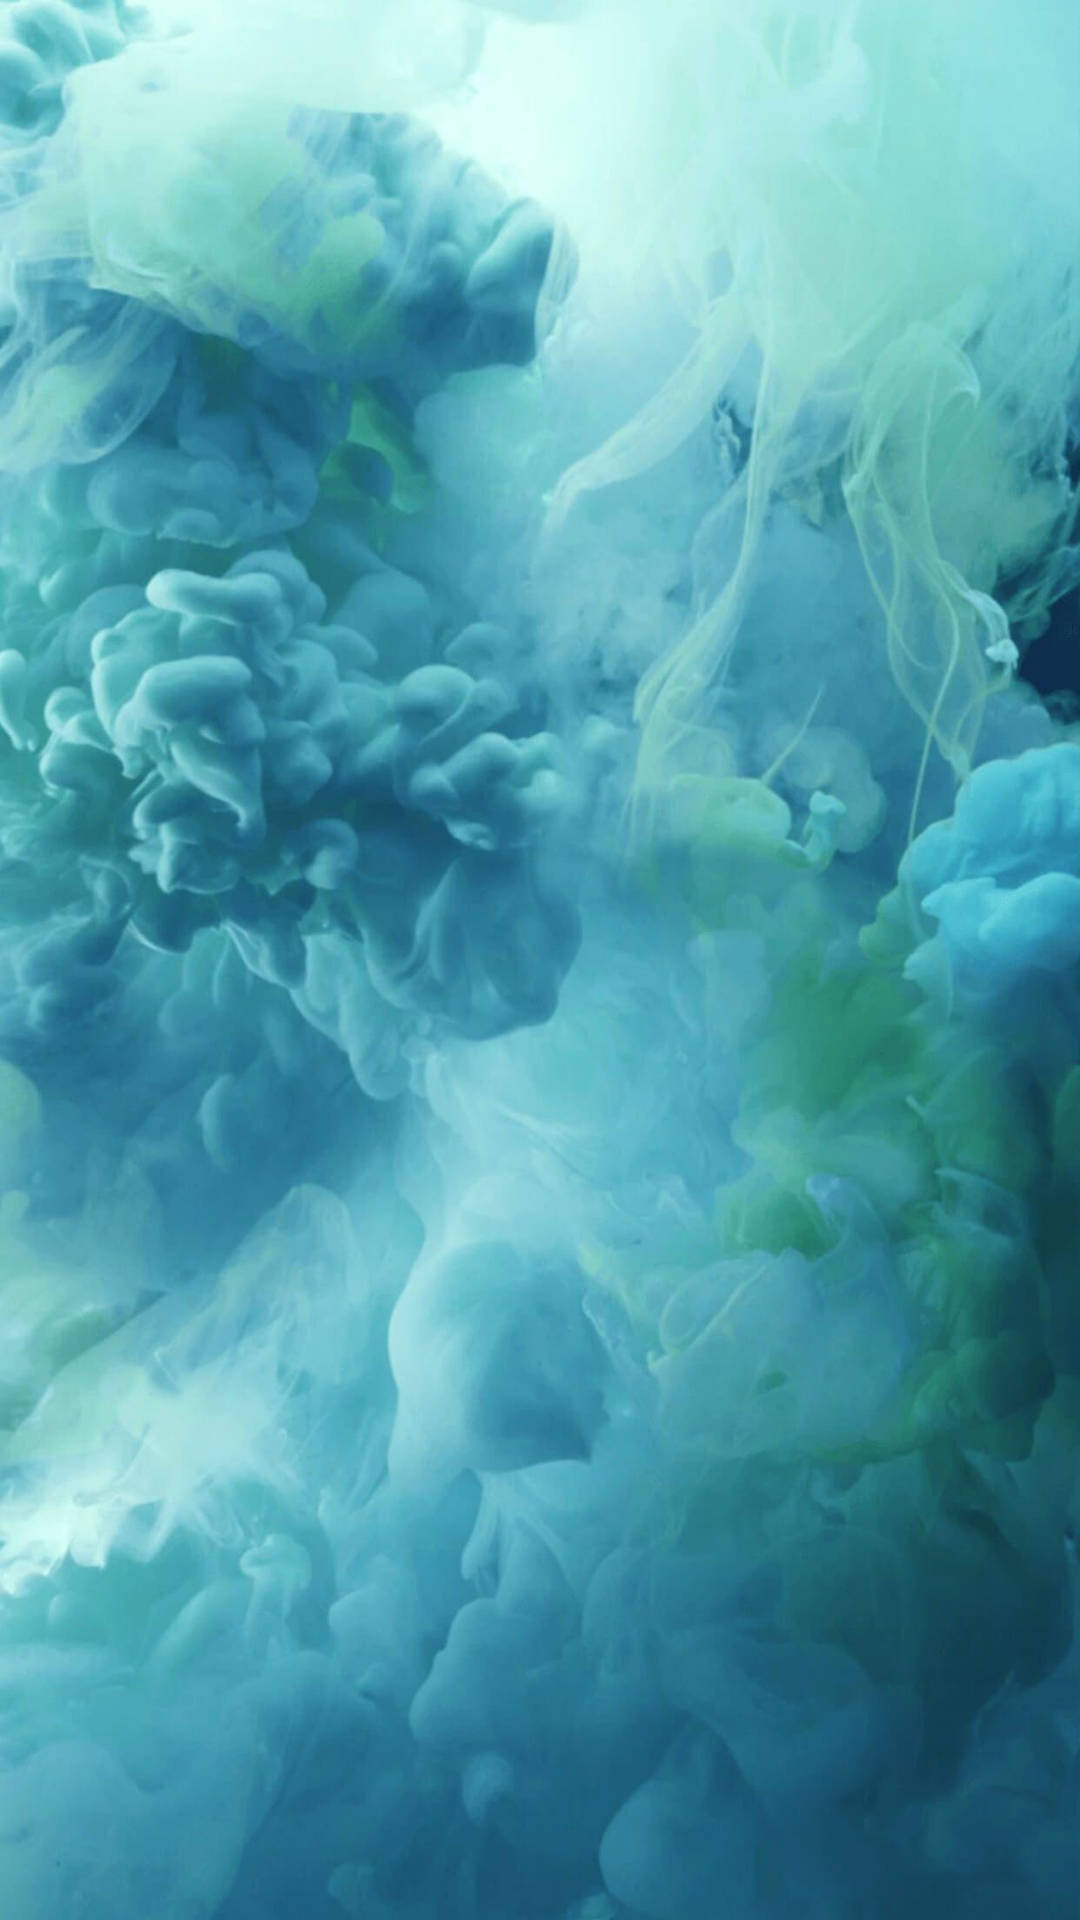 Fundode Tela Ios 7 Em Nuvens Azul Claro E Verde Papel de Parede